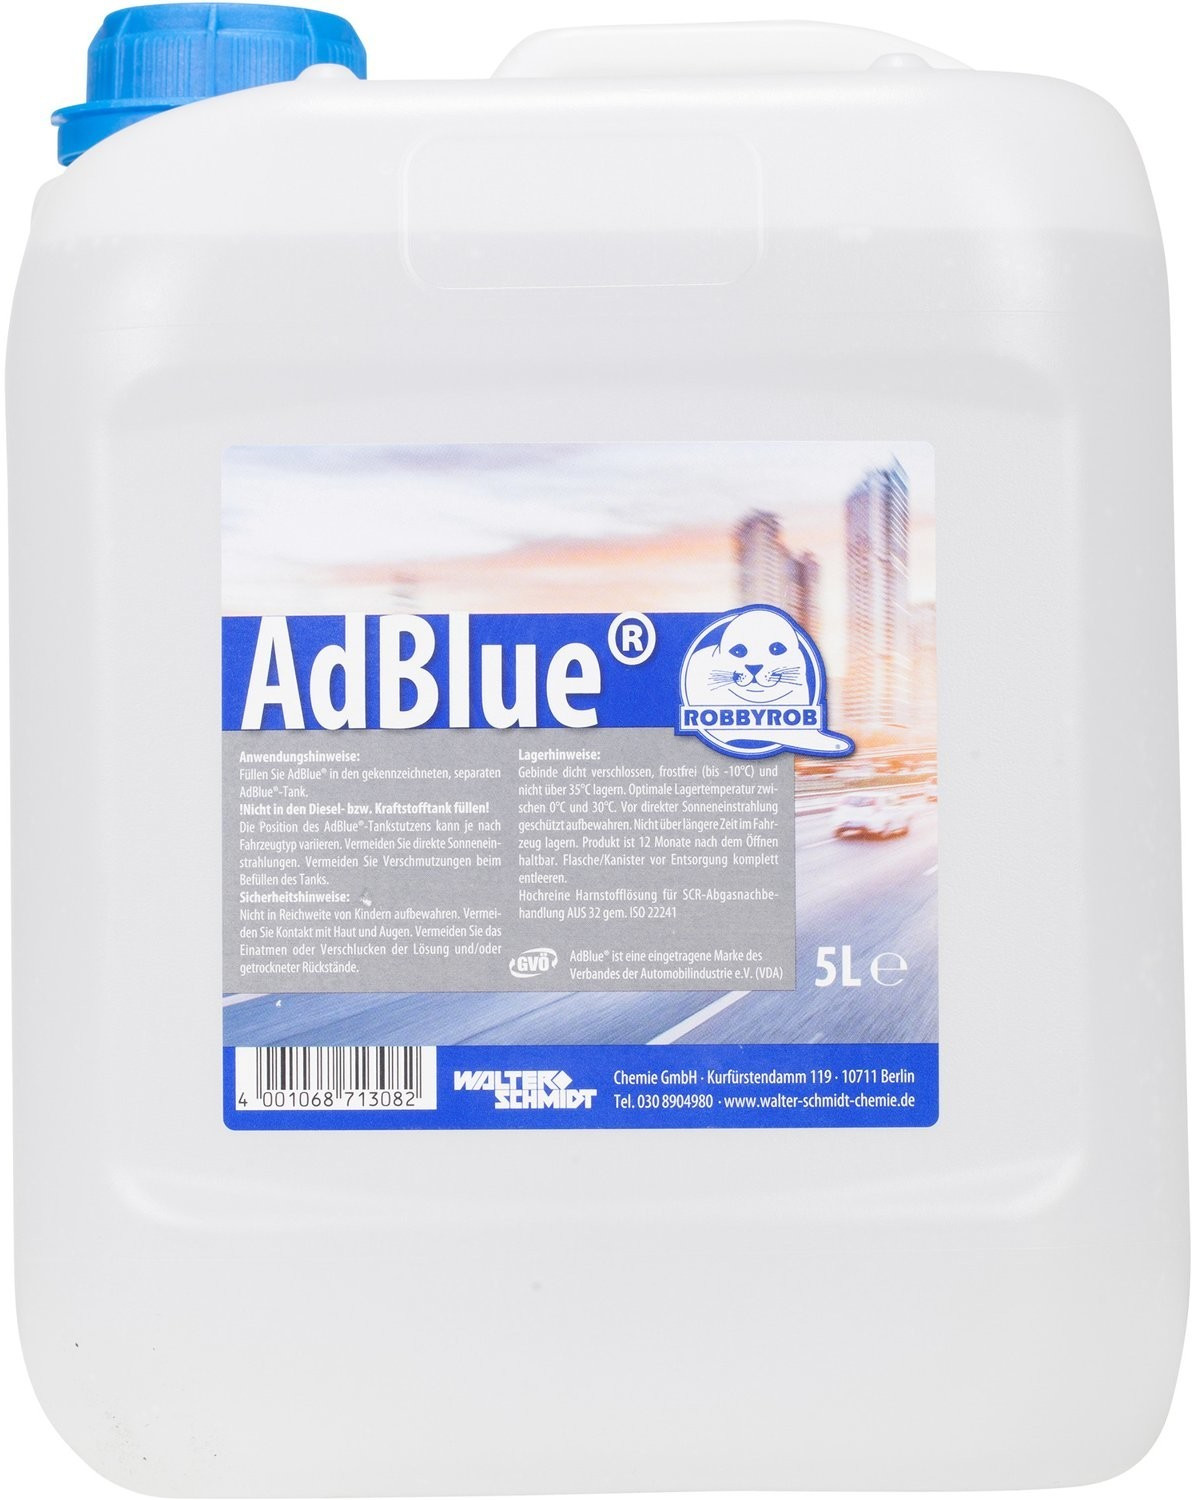 Kanisterpumpe für AdBlue® ABP 5 B günstig kaufen ᐅ Unisales GmbH